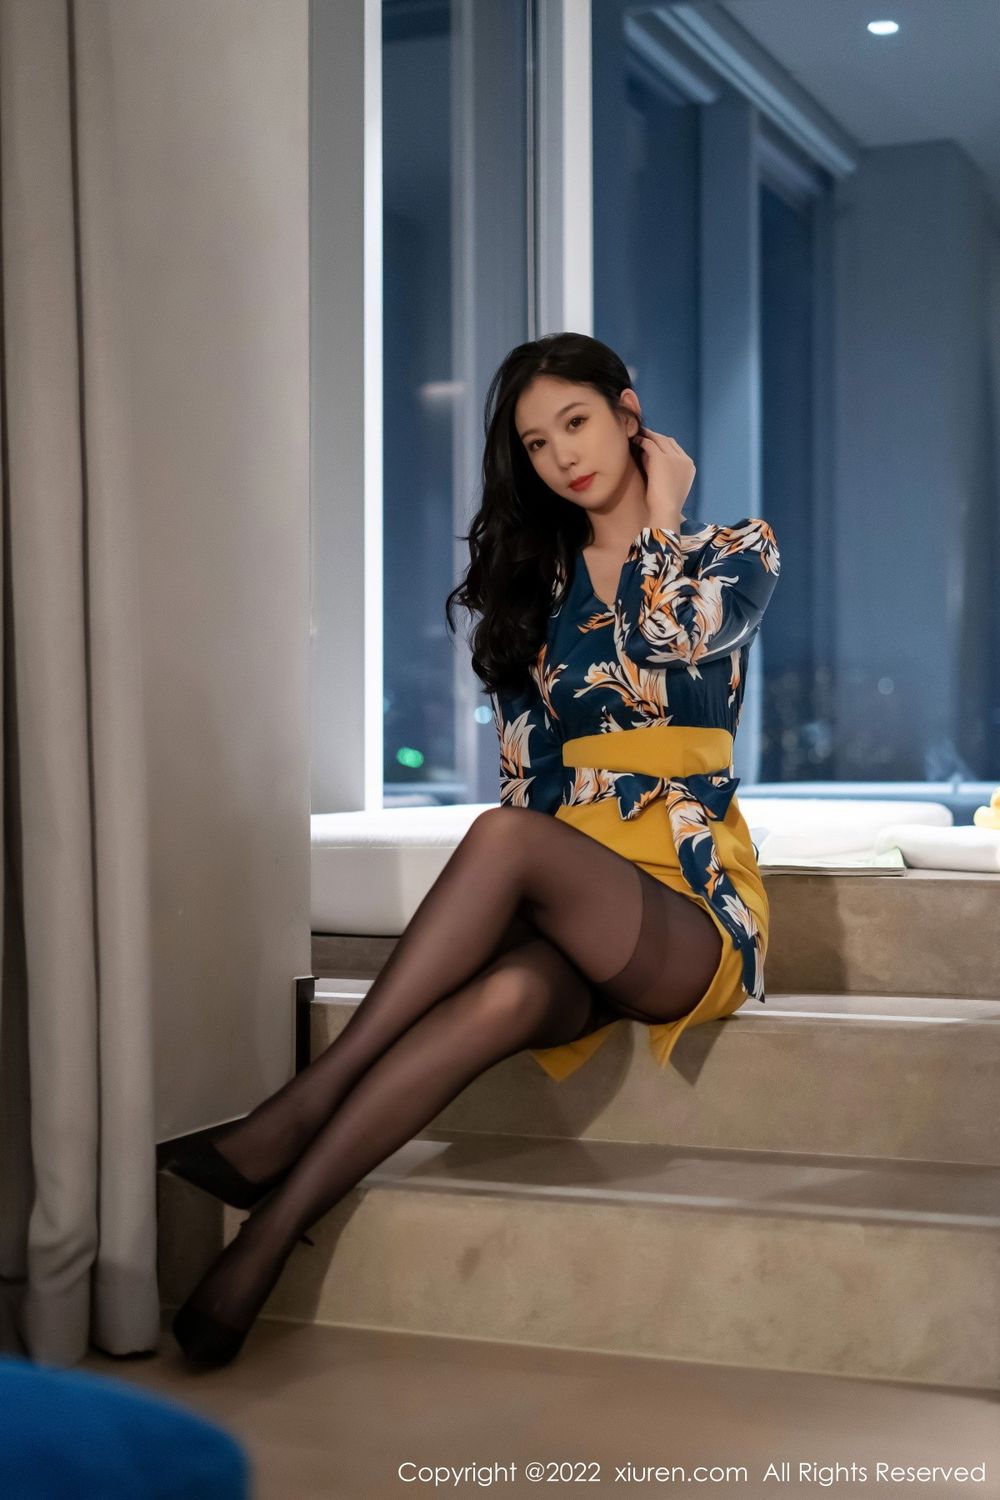 美女模特李雅柔蓝色上衣搭配黄色短裙黑丝系列写真